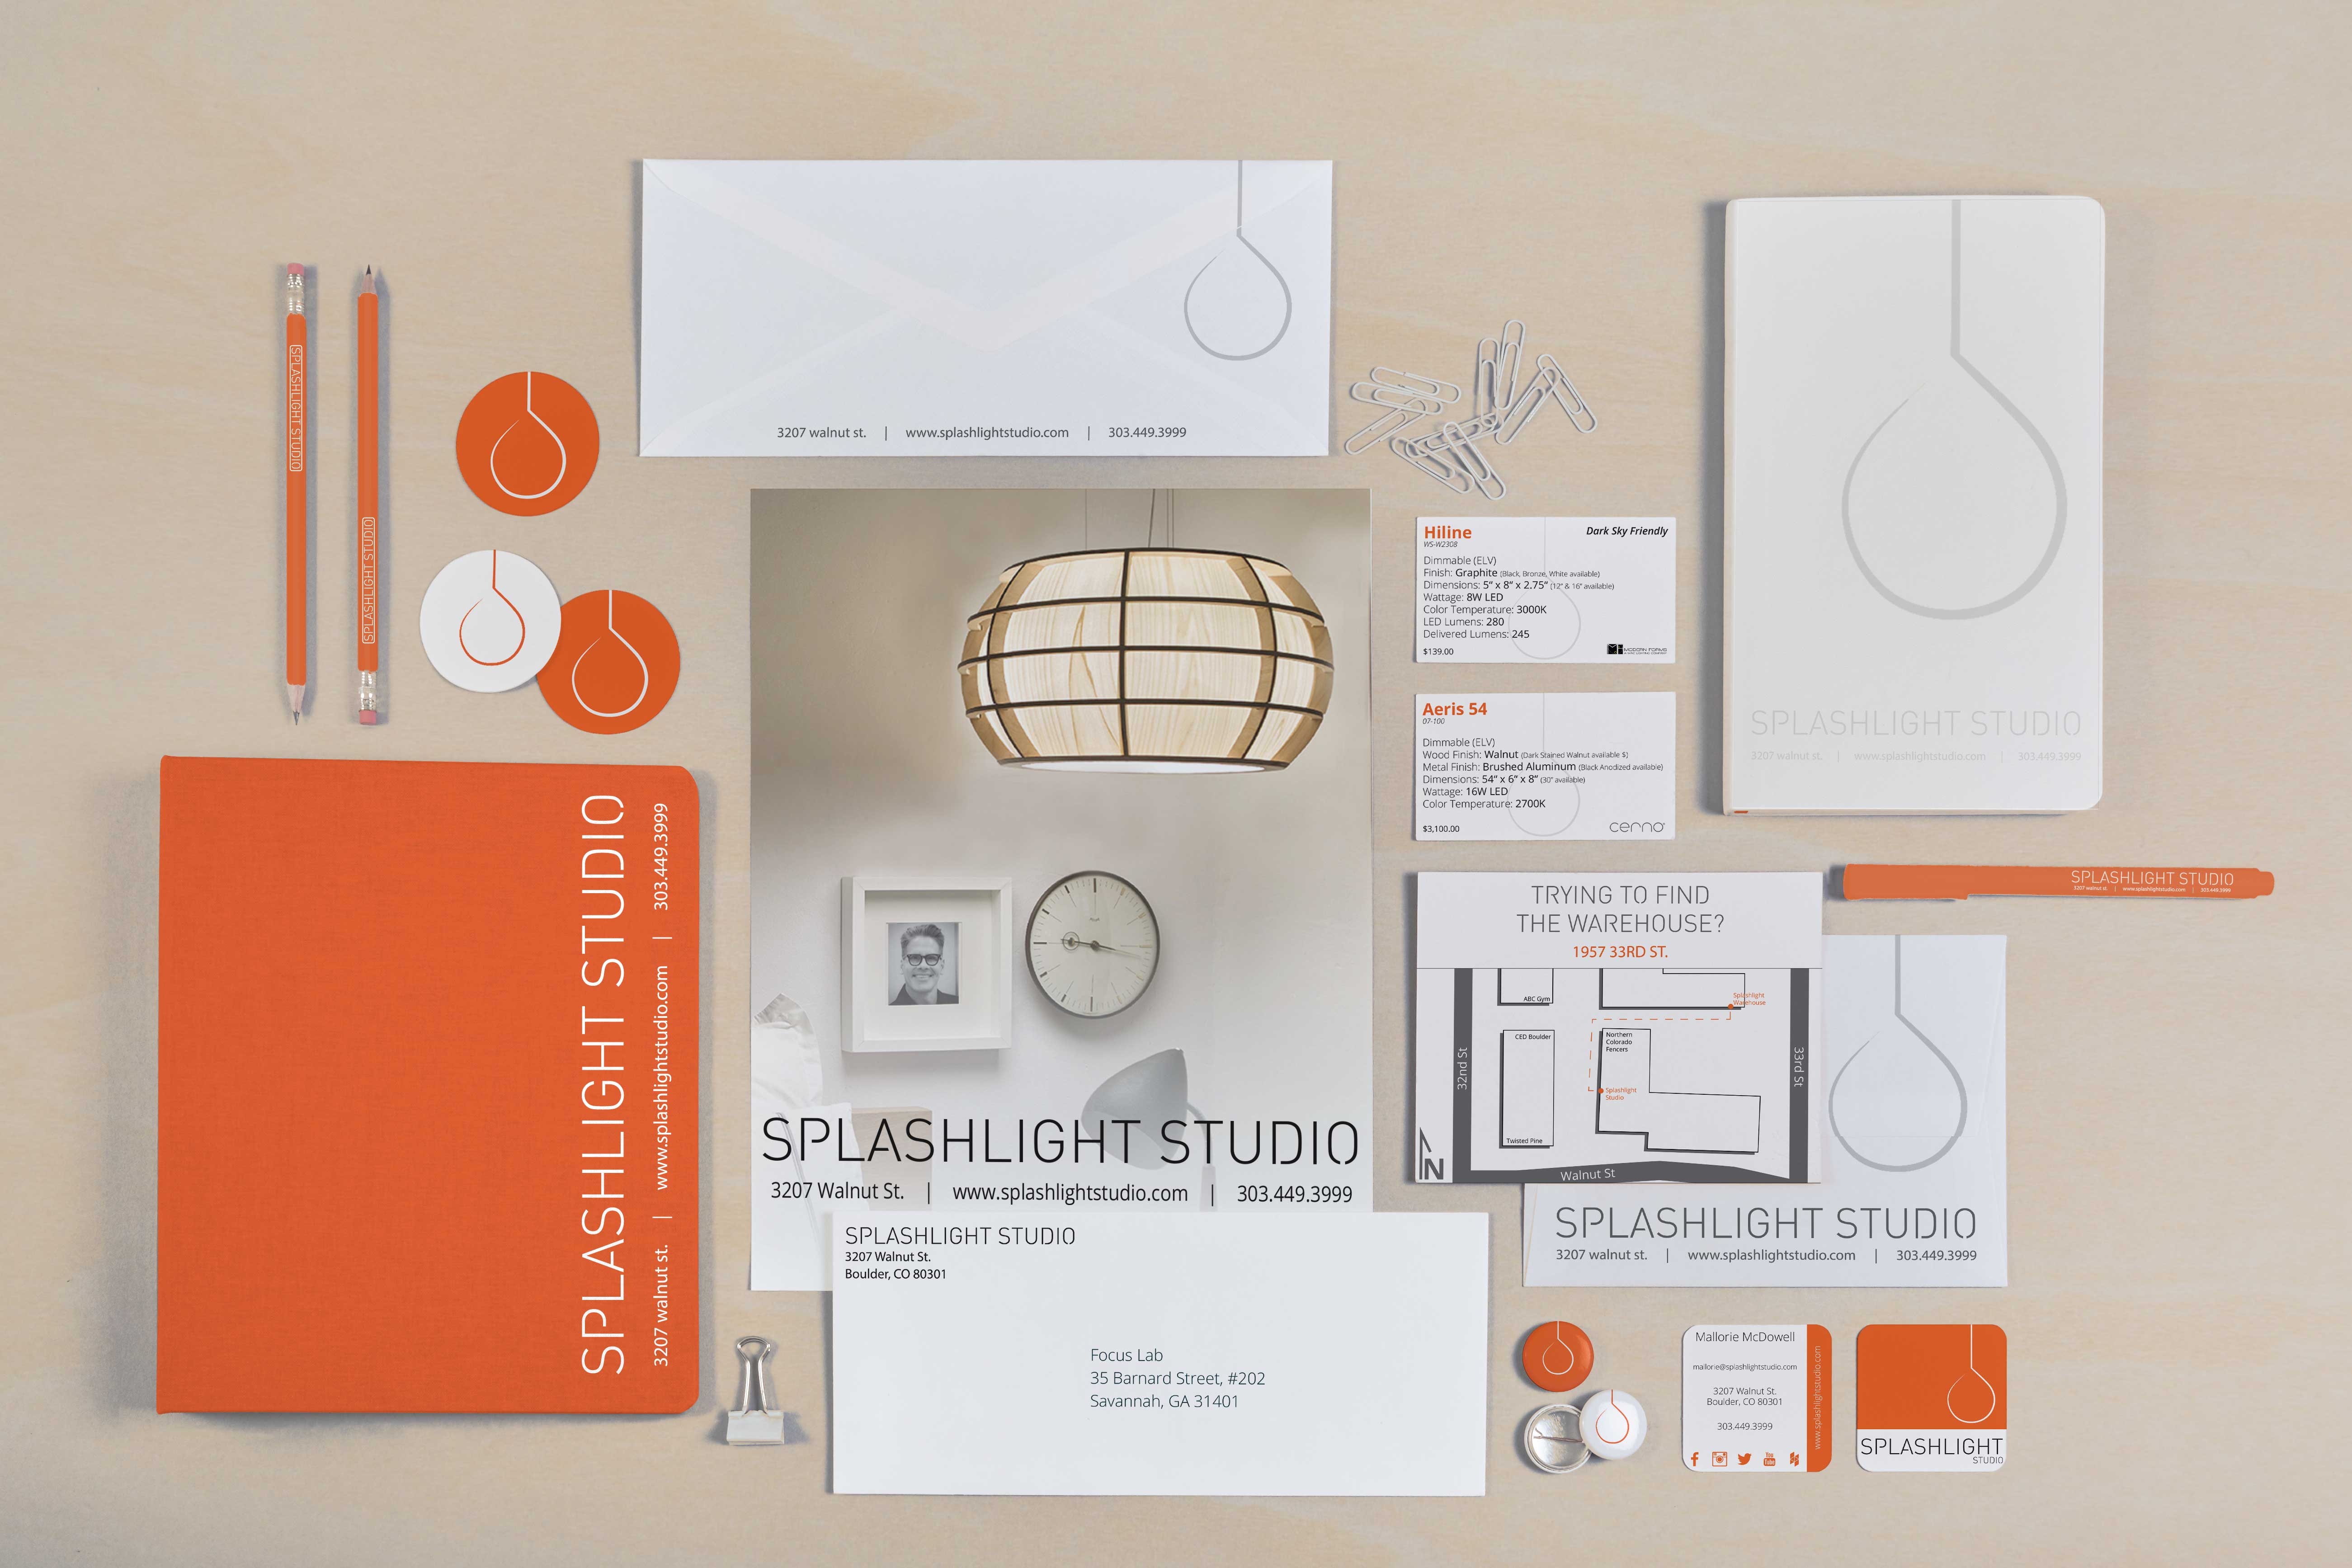 Branding materials for Splashlight Studio